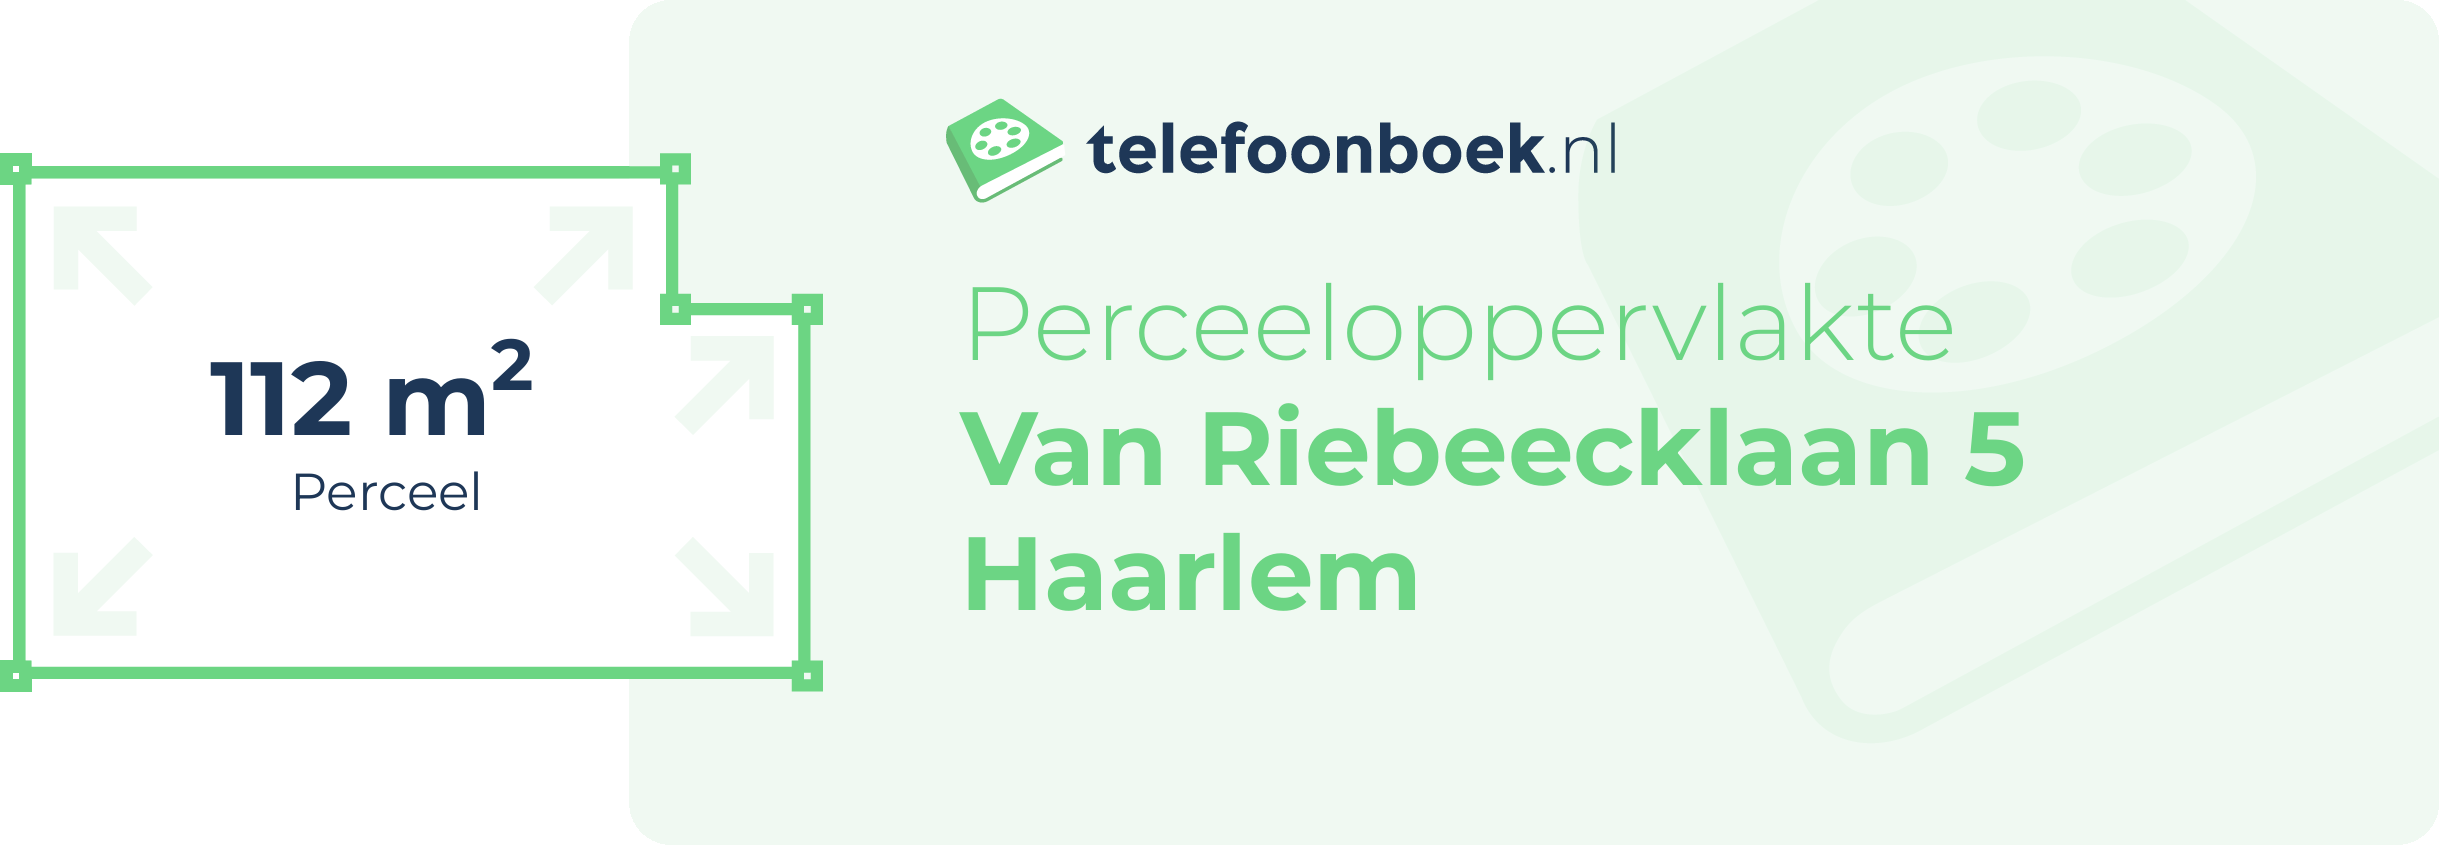 Perceeloppervlakte Van Riebeecklaan 5 Haarlem